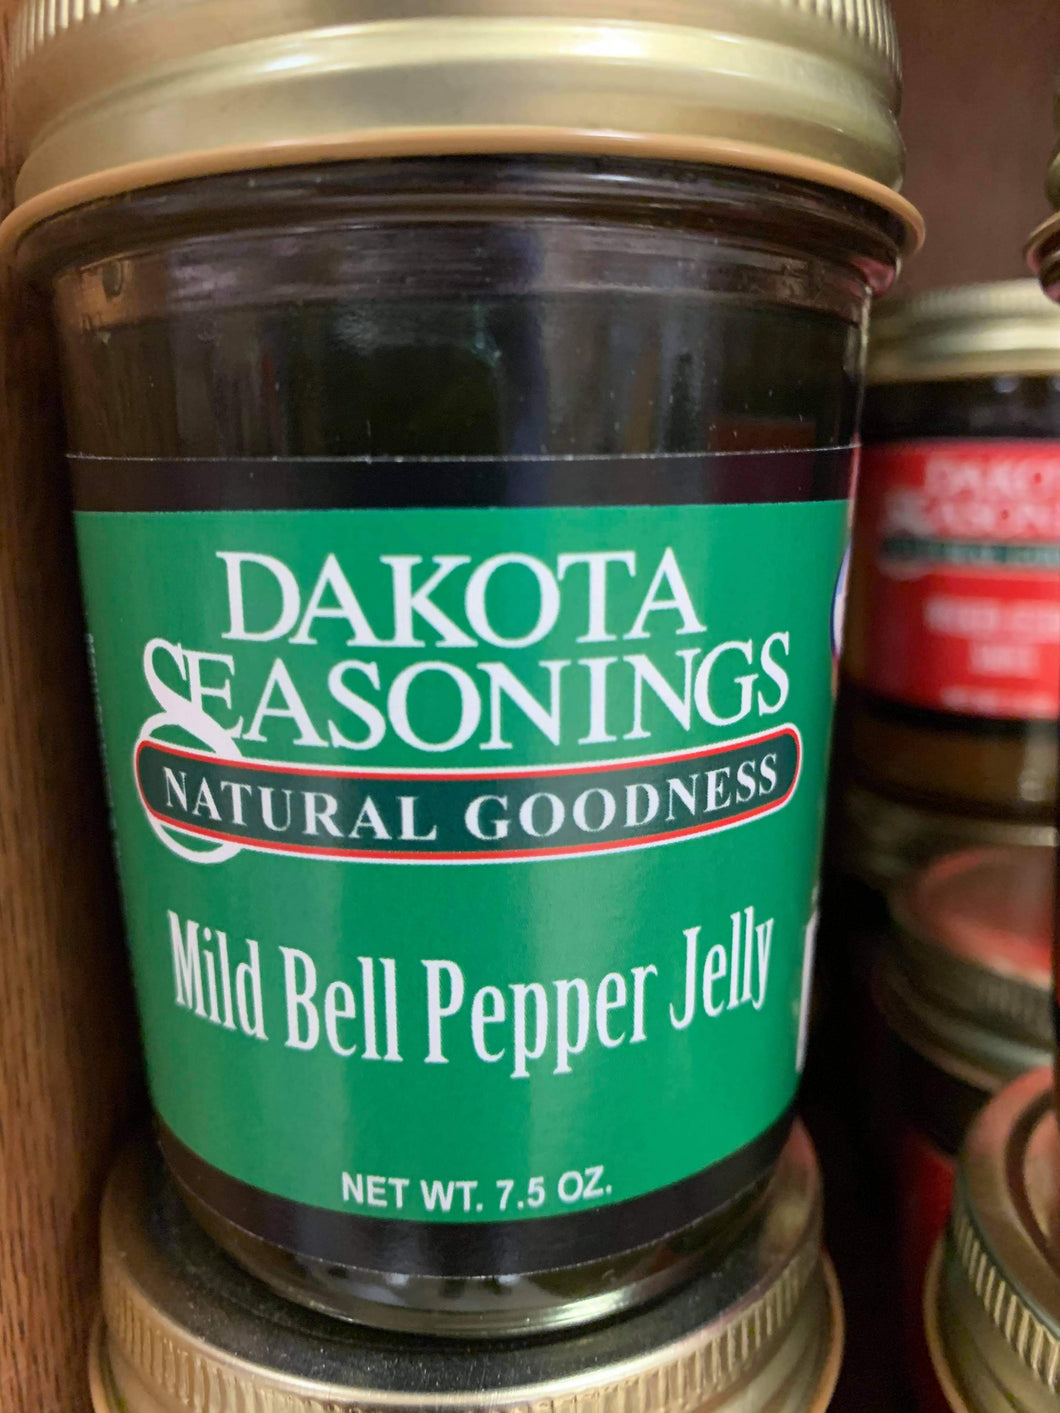 Dakota seasonings Mild Bell Pepper Jelly